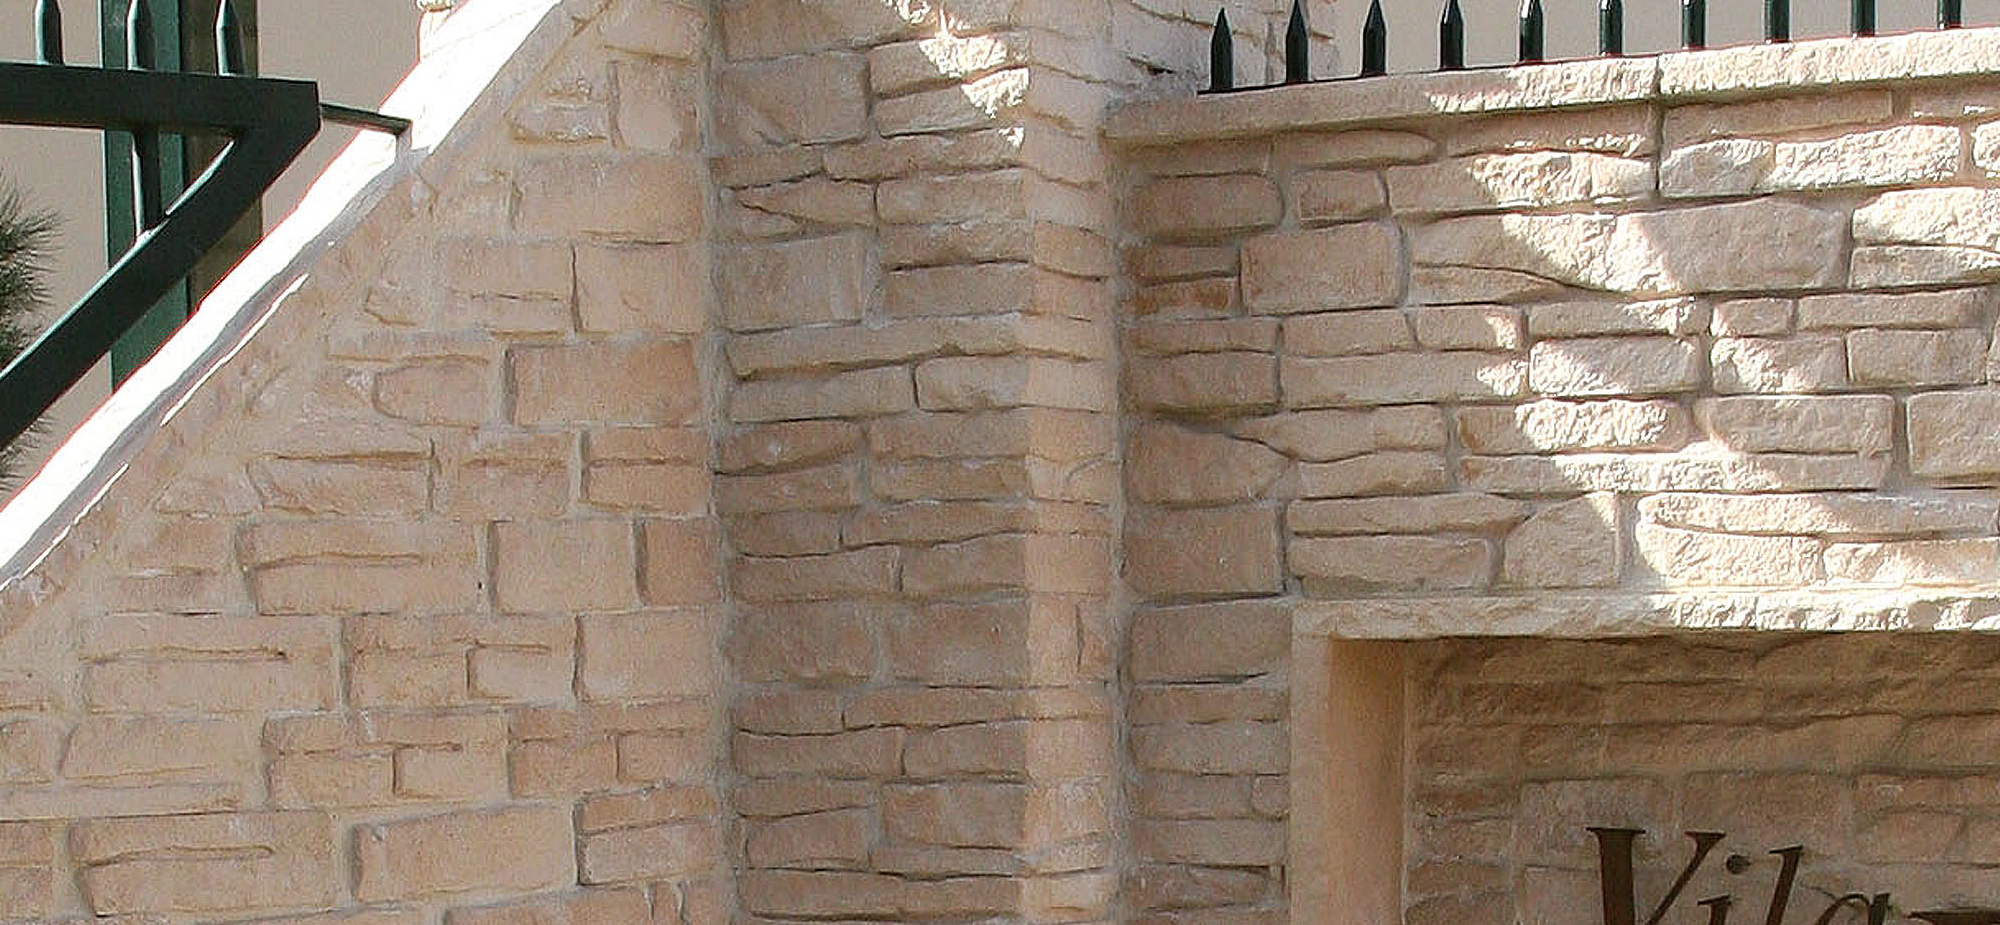 Muro de Pedras - Muros e Revestimentos com Pedras